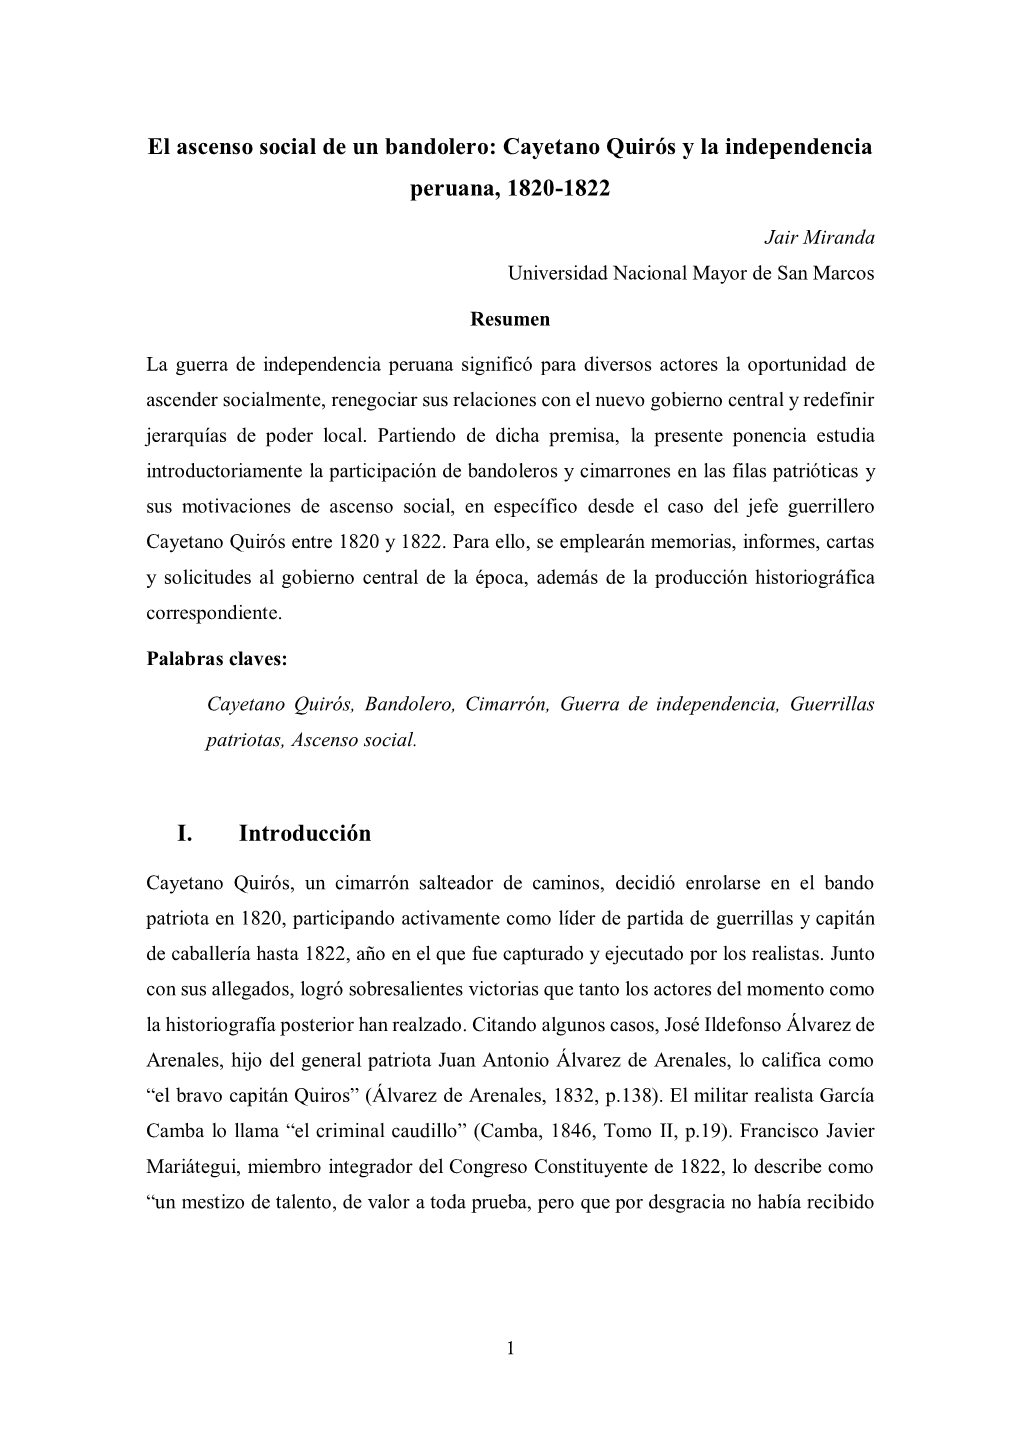 El Ascenso Social De Un Bandolero: Cayetano Quirós Y La Independencia Peruana, 1820-1822 I. Introducción